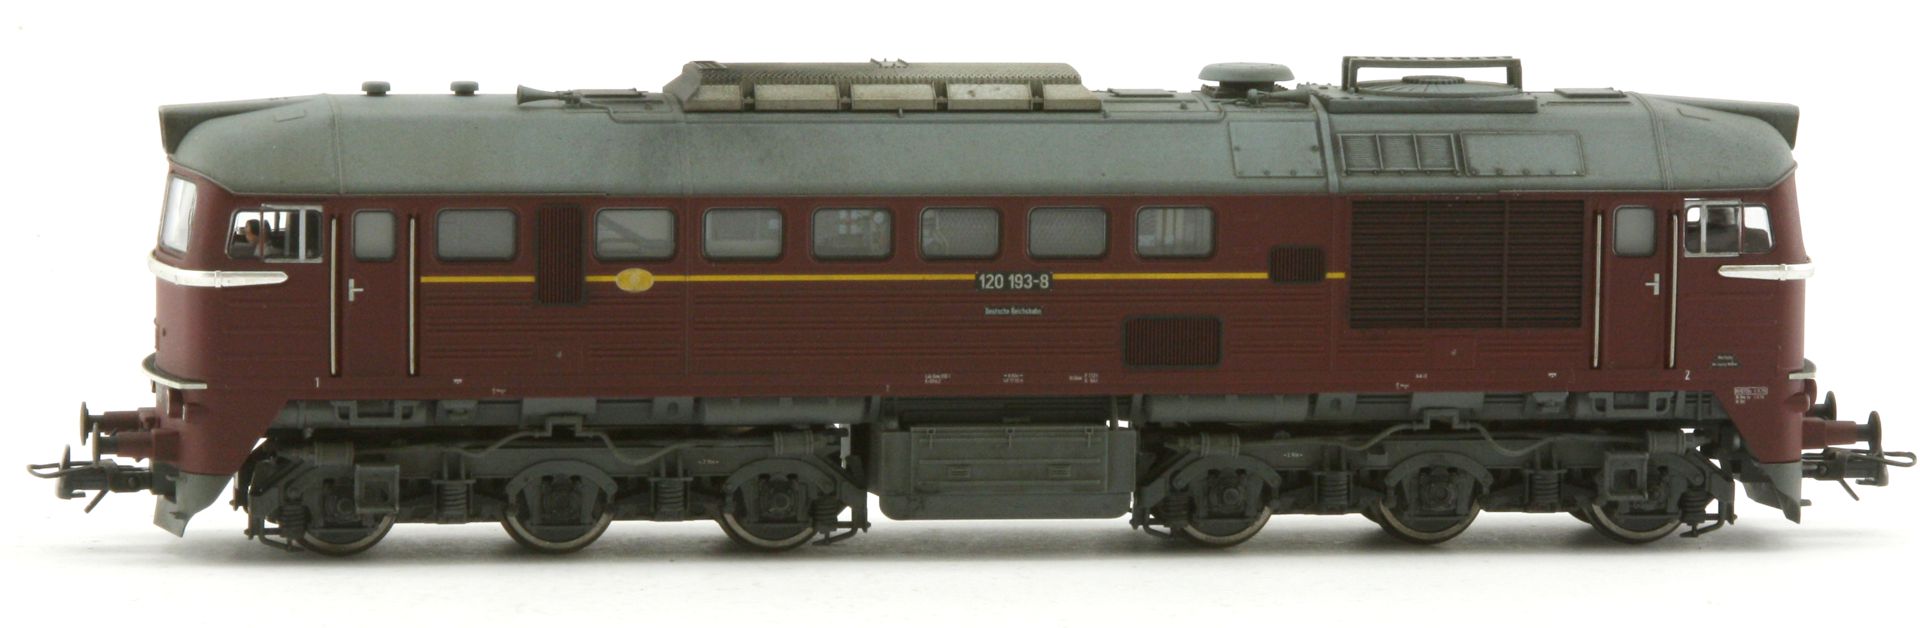 Saxonia 87057 - Diesellok 120 193-8, DR, Ep.IV, leichte Alterung